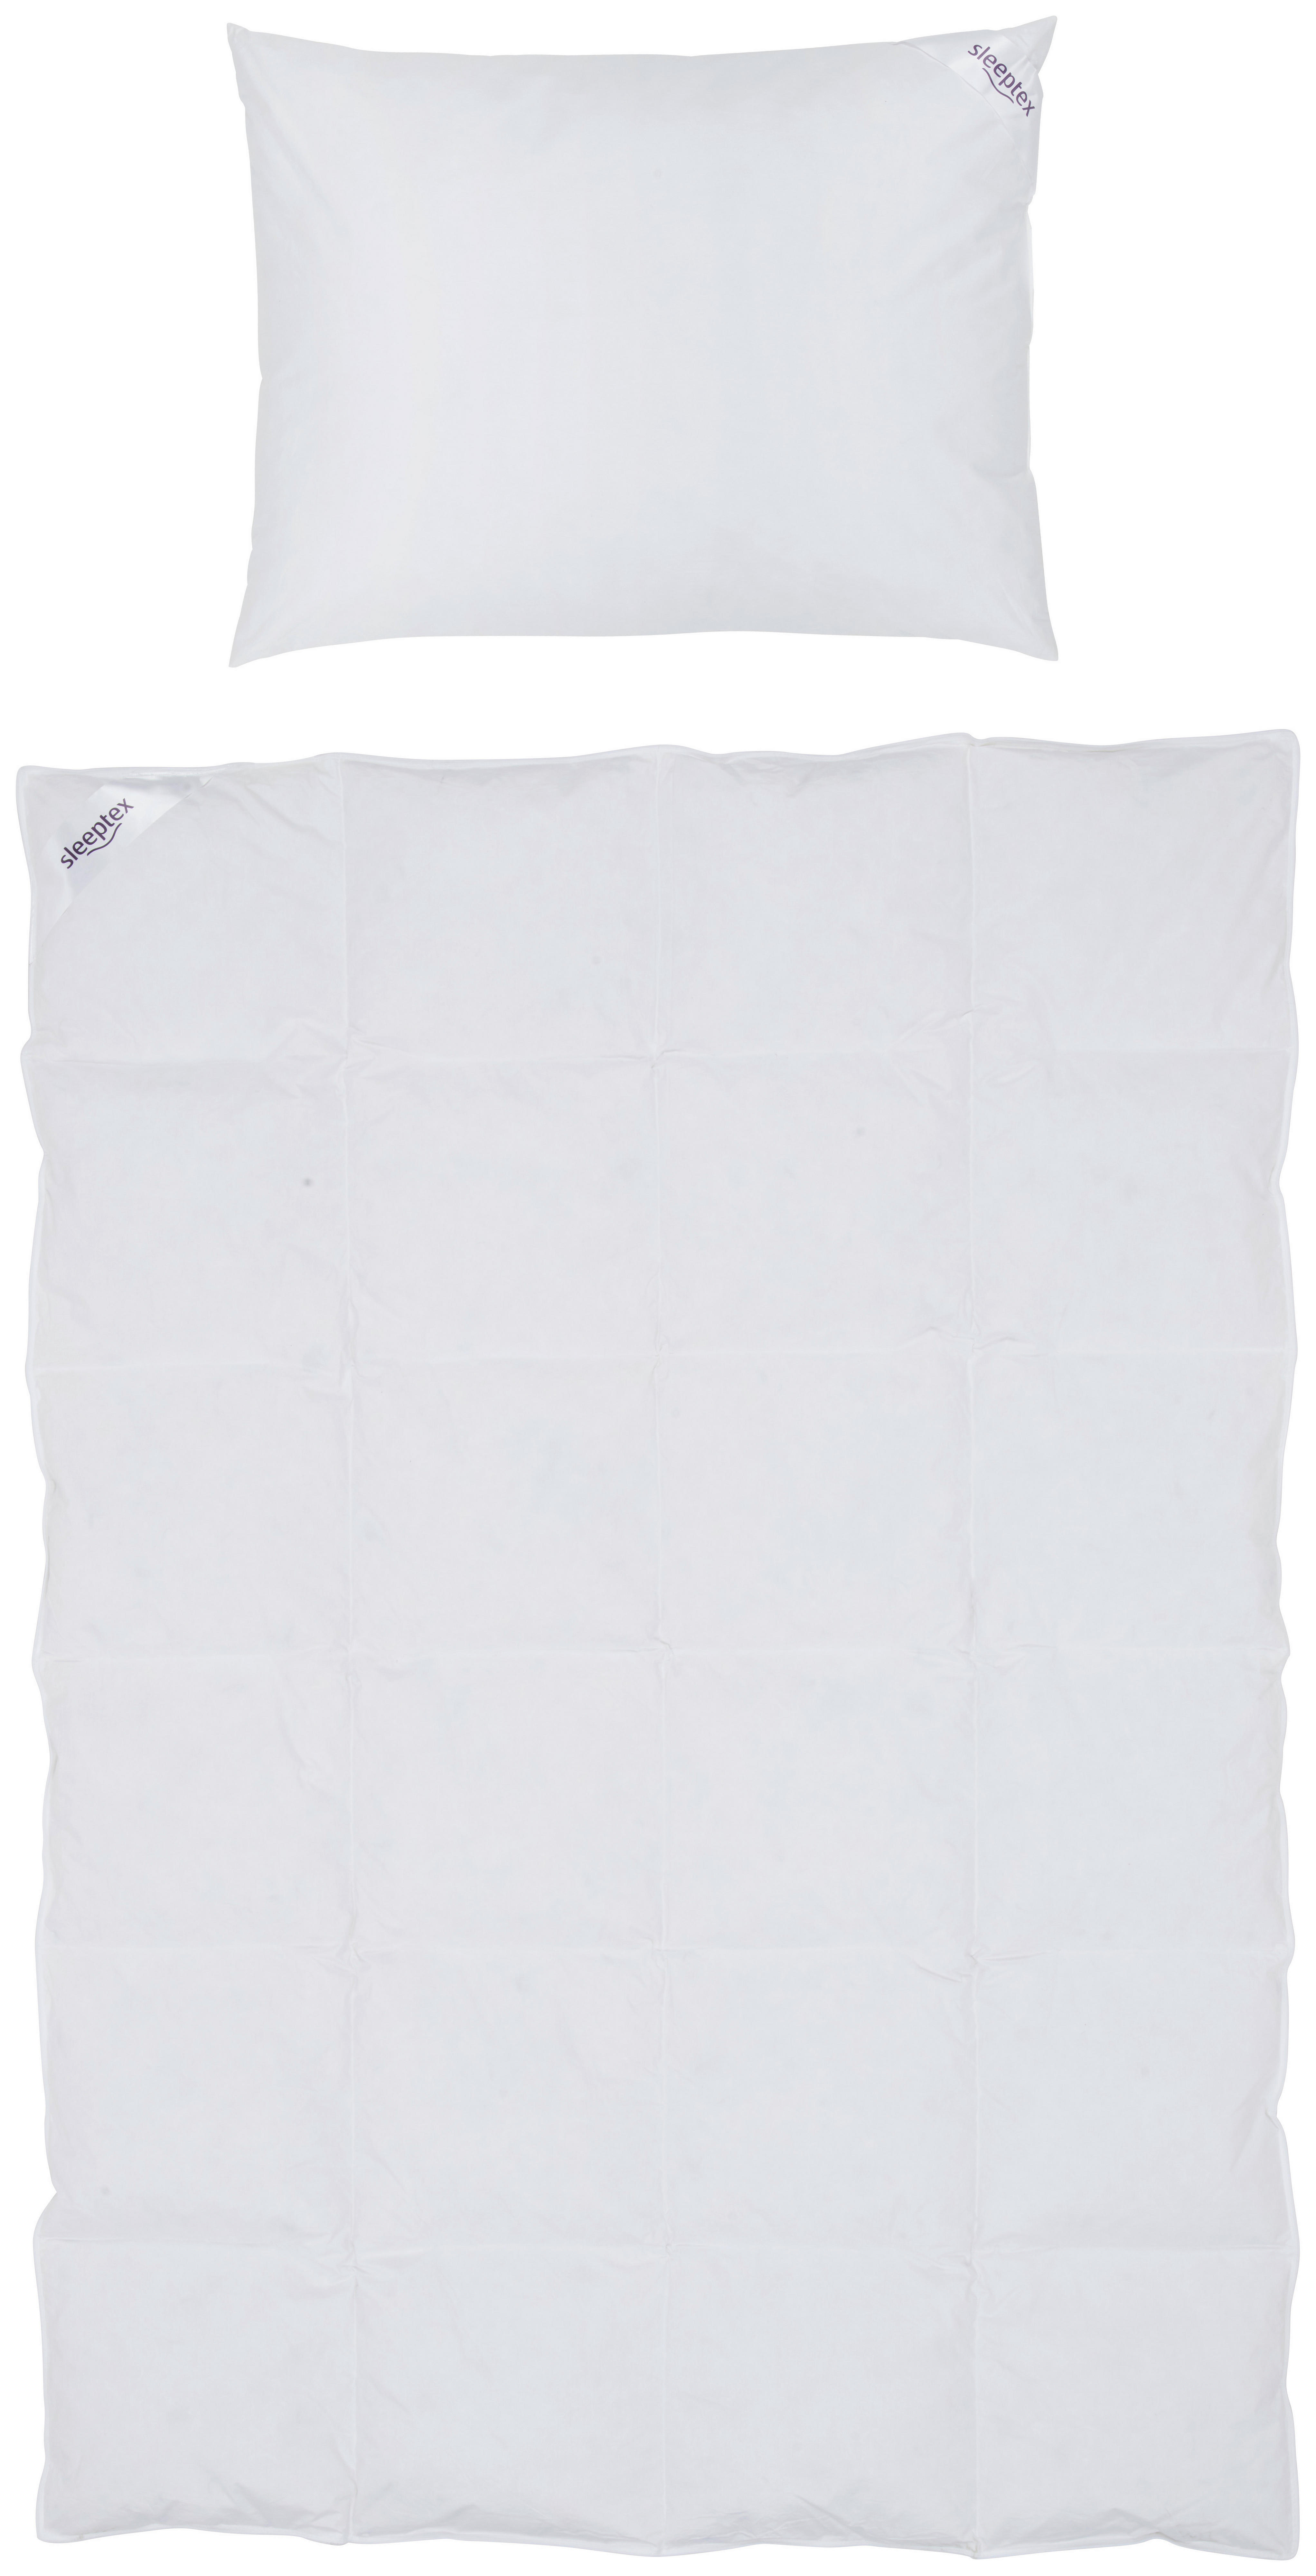 BETTENSET SLEEPTEX 140/200 cm  - Weiß, Basics, Textil (140/200cm) - Sleeptex